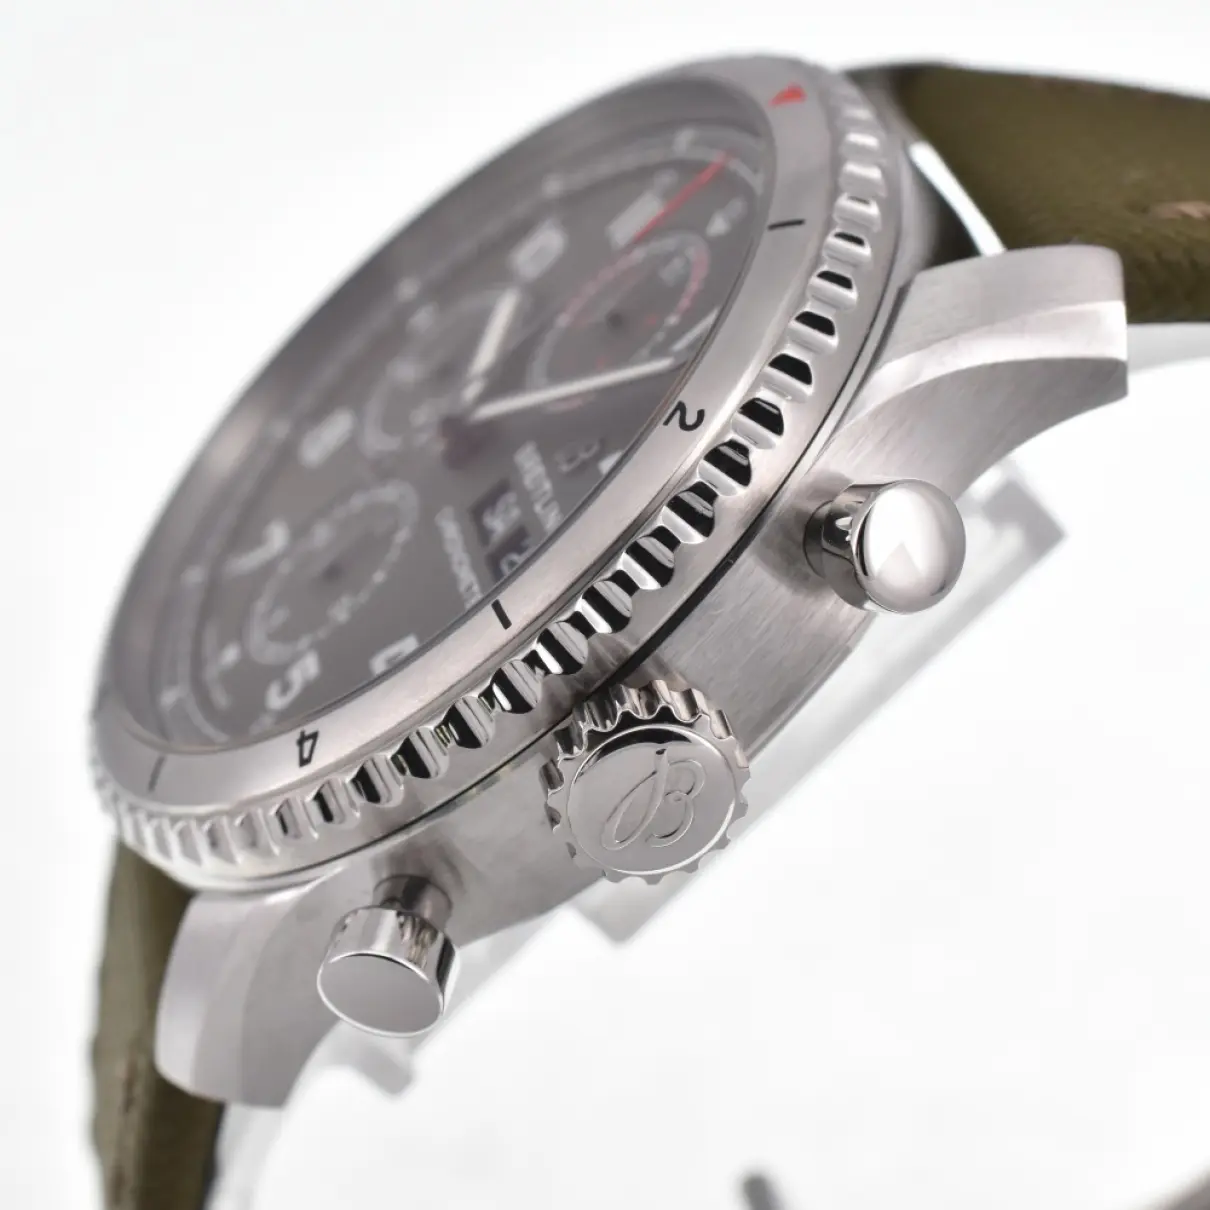 Luxury Breitling Watches Men